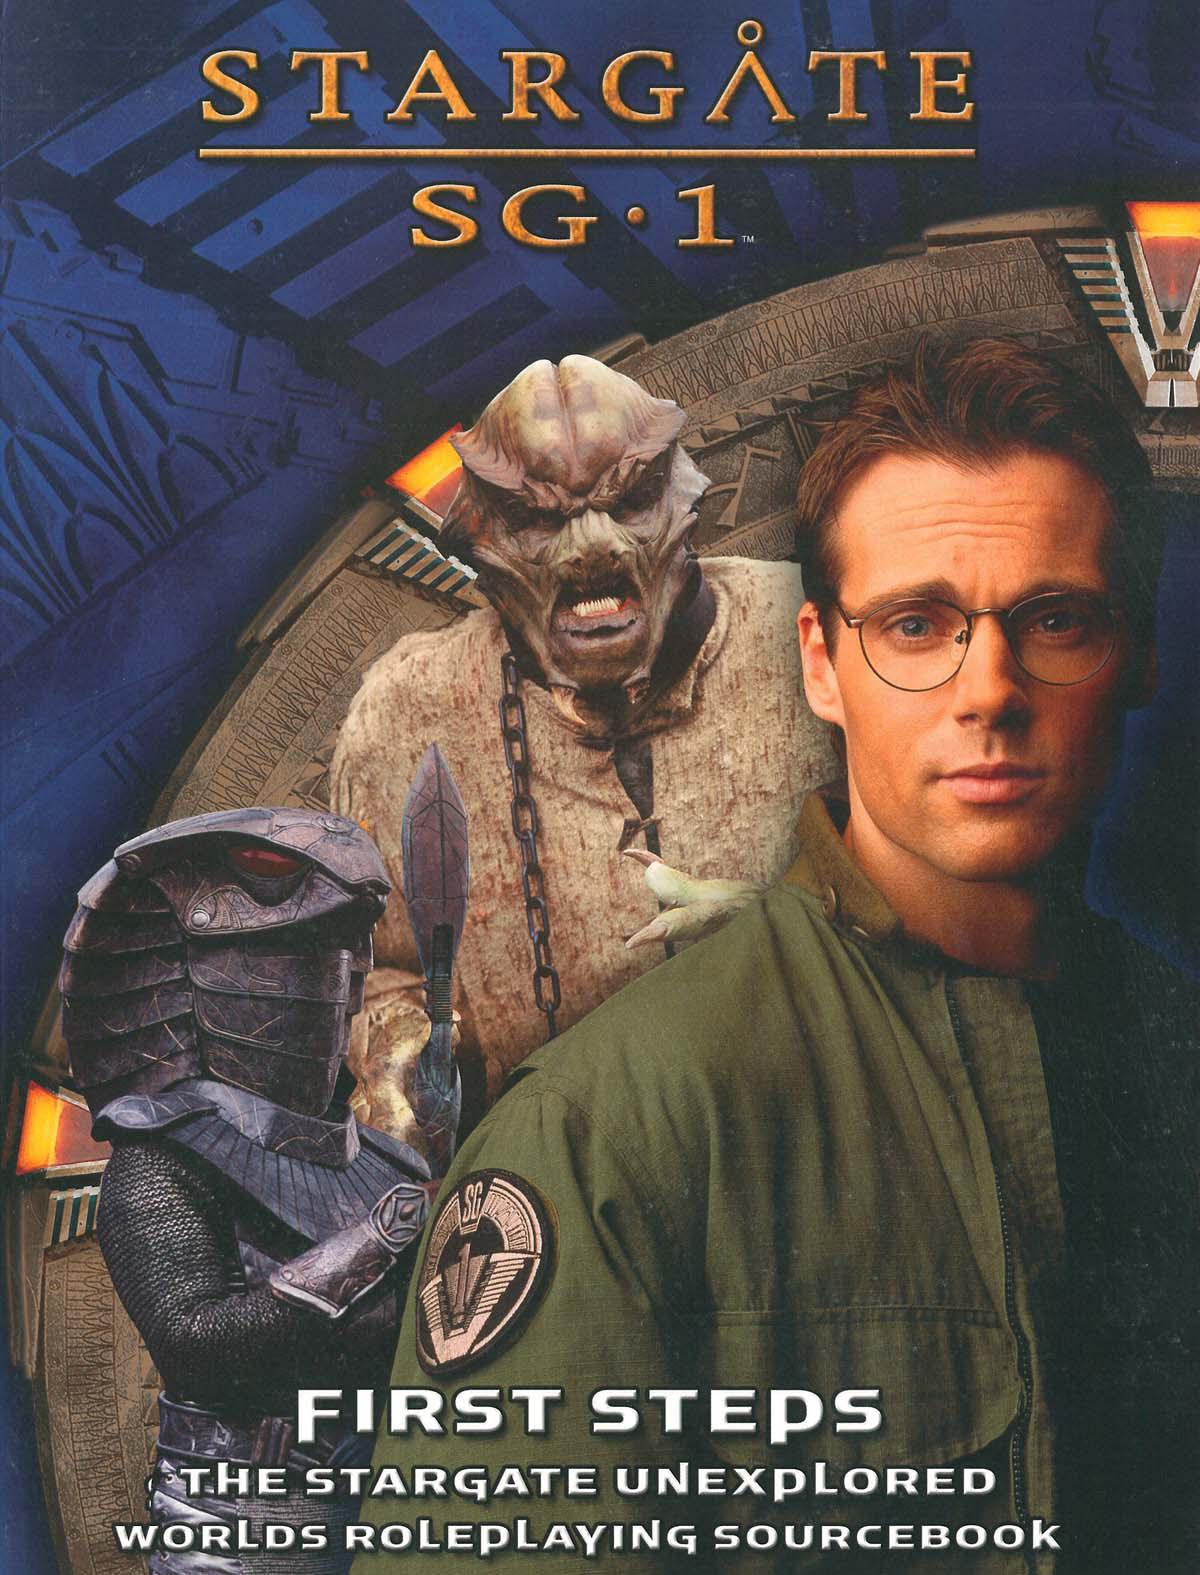 Stargate SG 1 Roleplaying Game, PDF